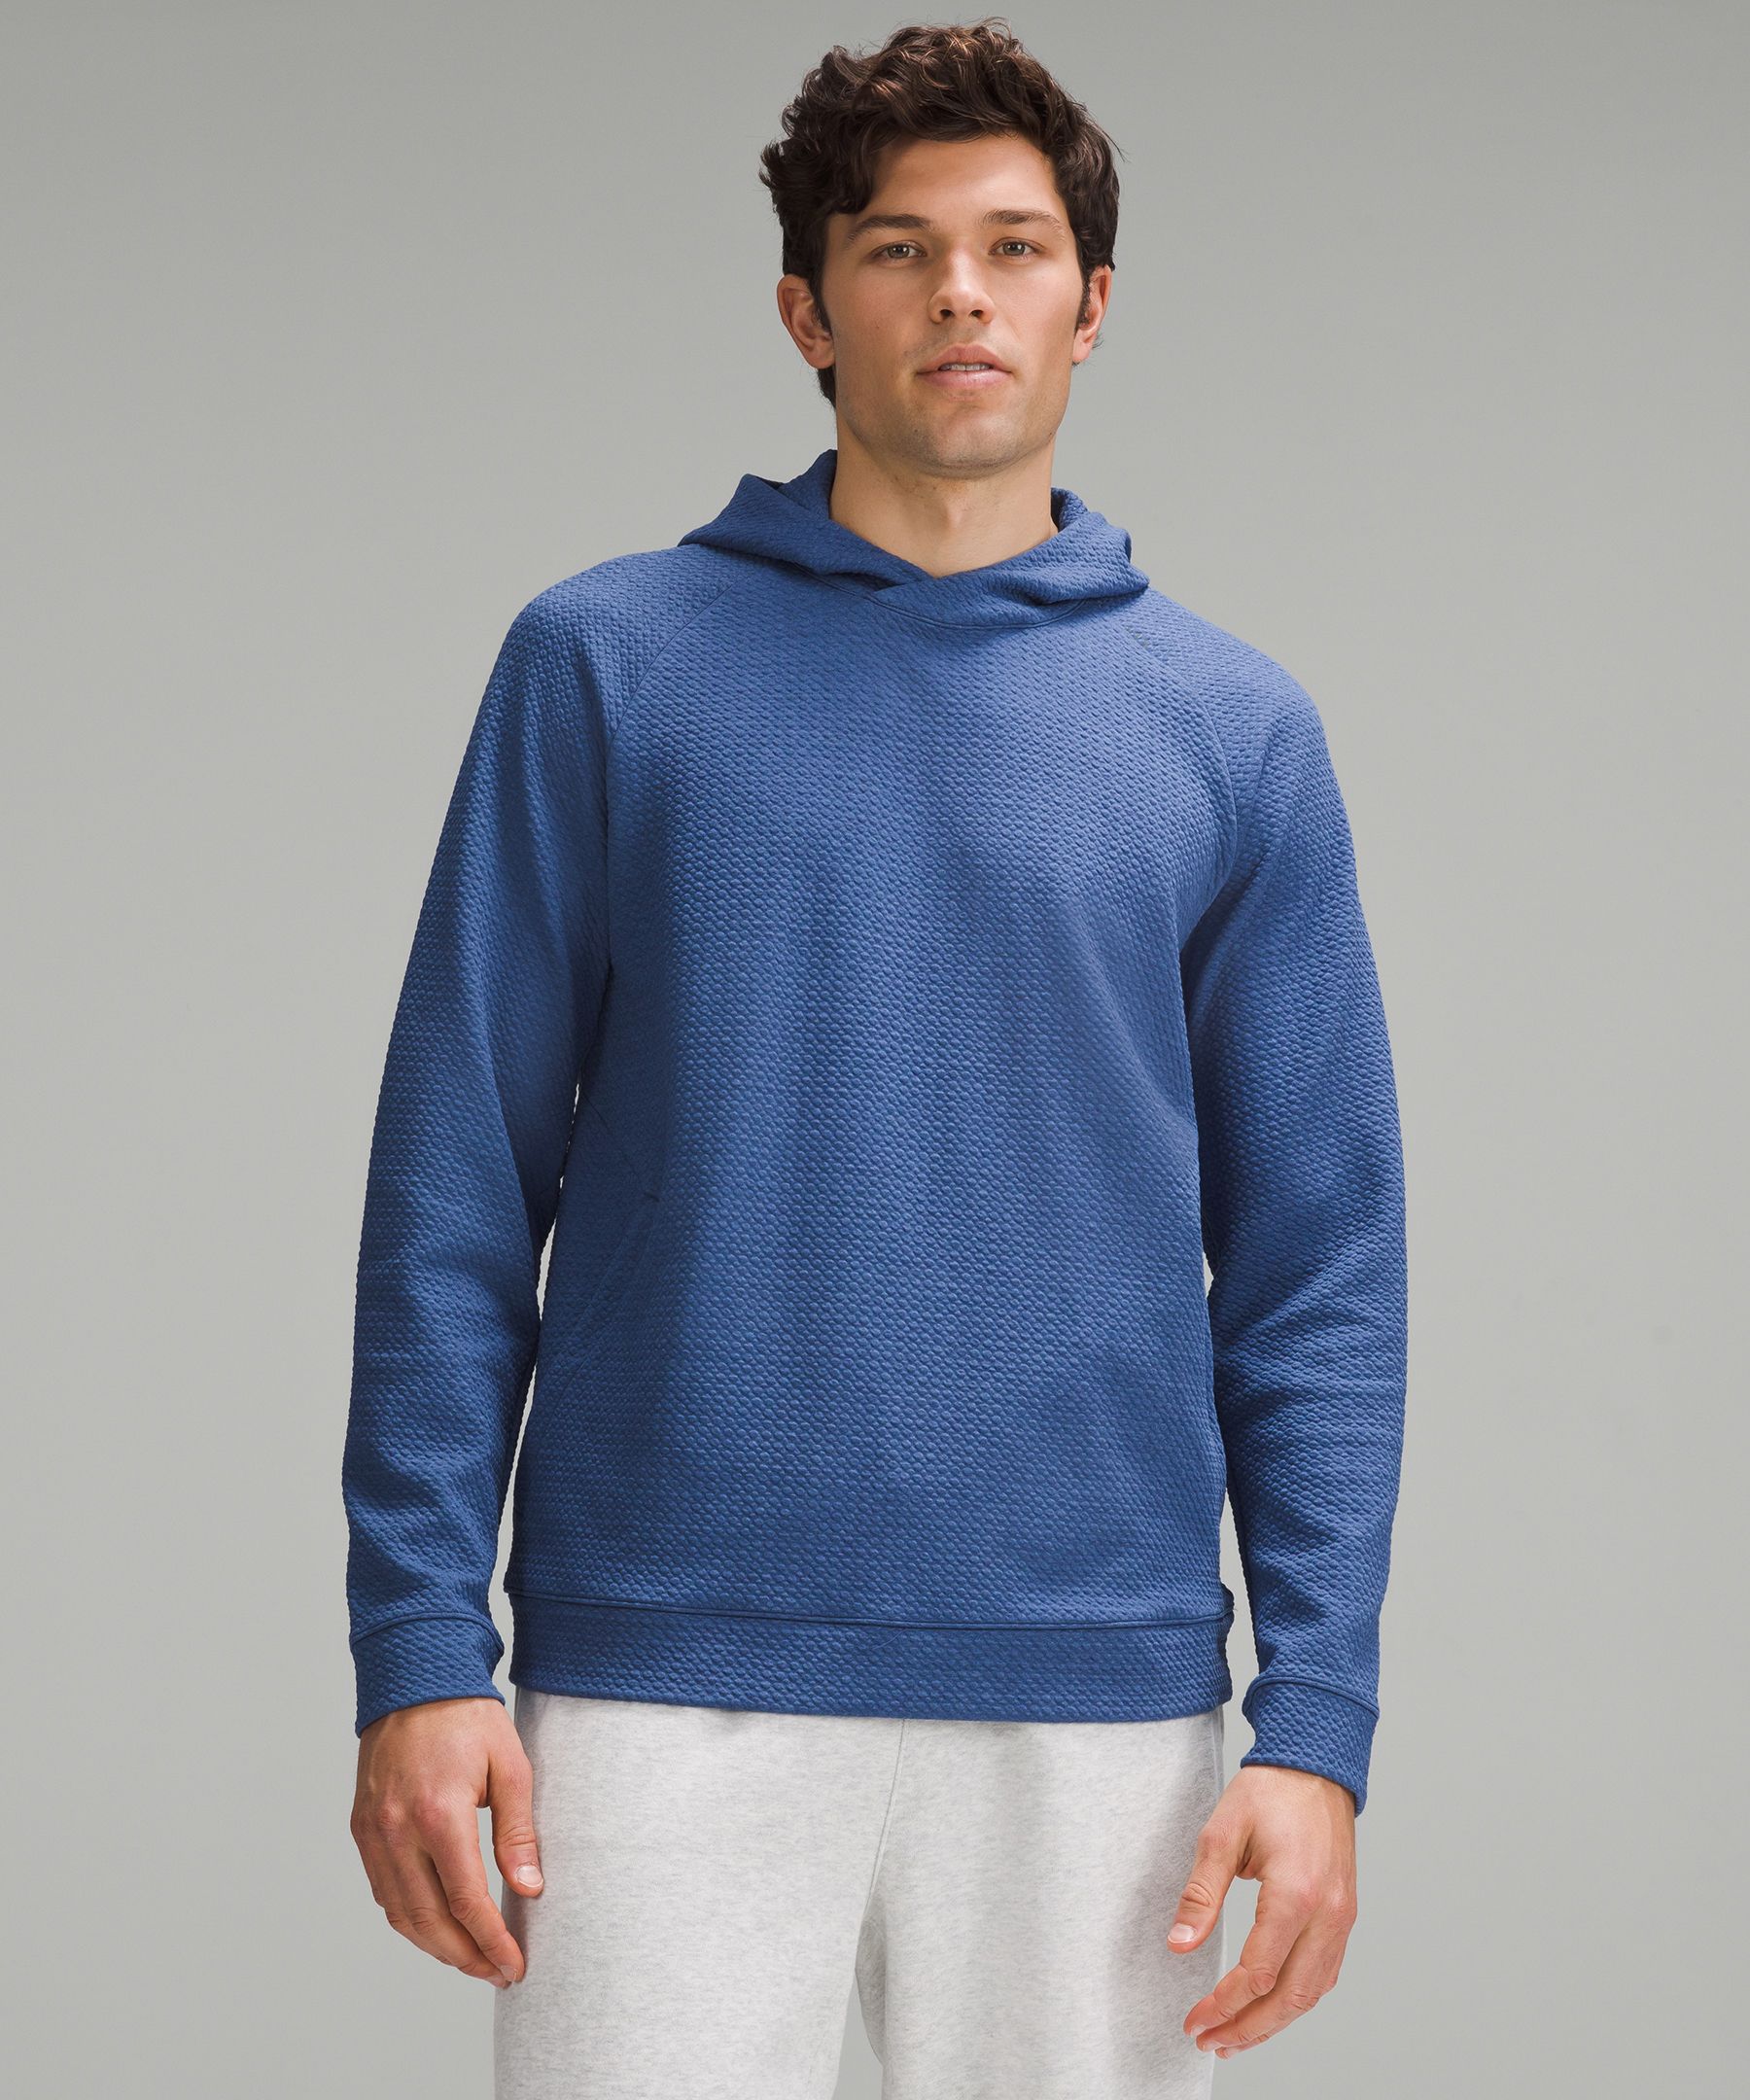 Textured Double-Knit Cotton Hoodie | Men's Hoodies & Sweatshirts ...